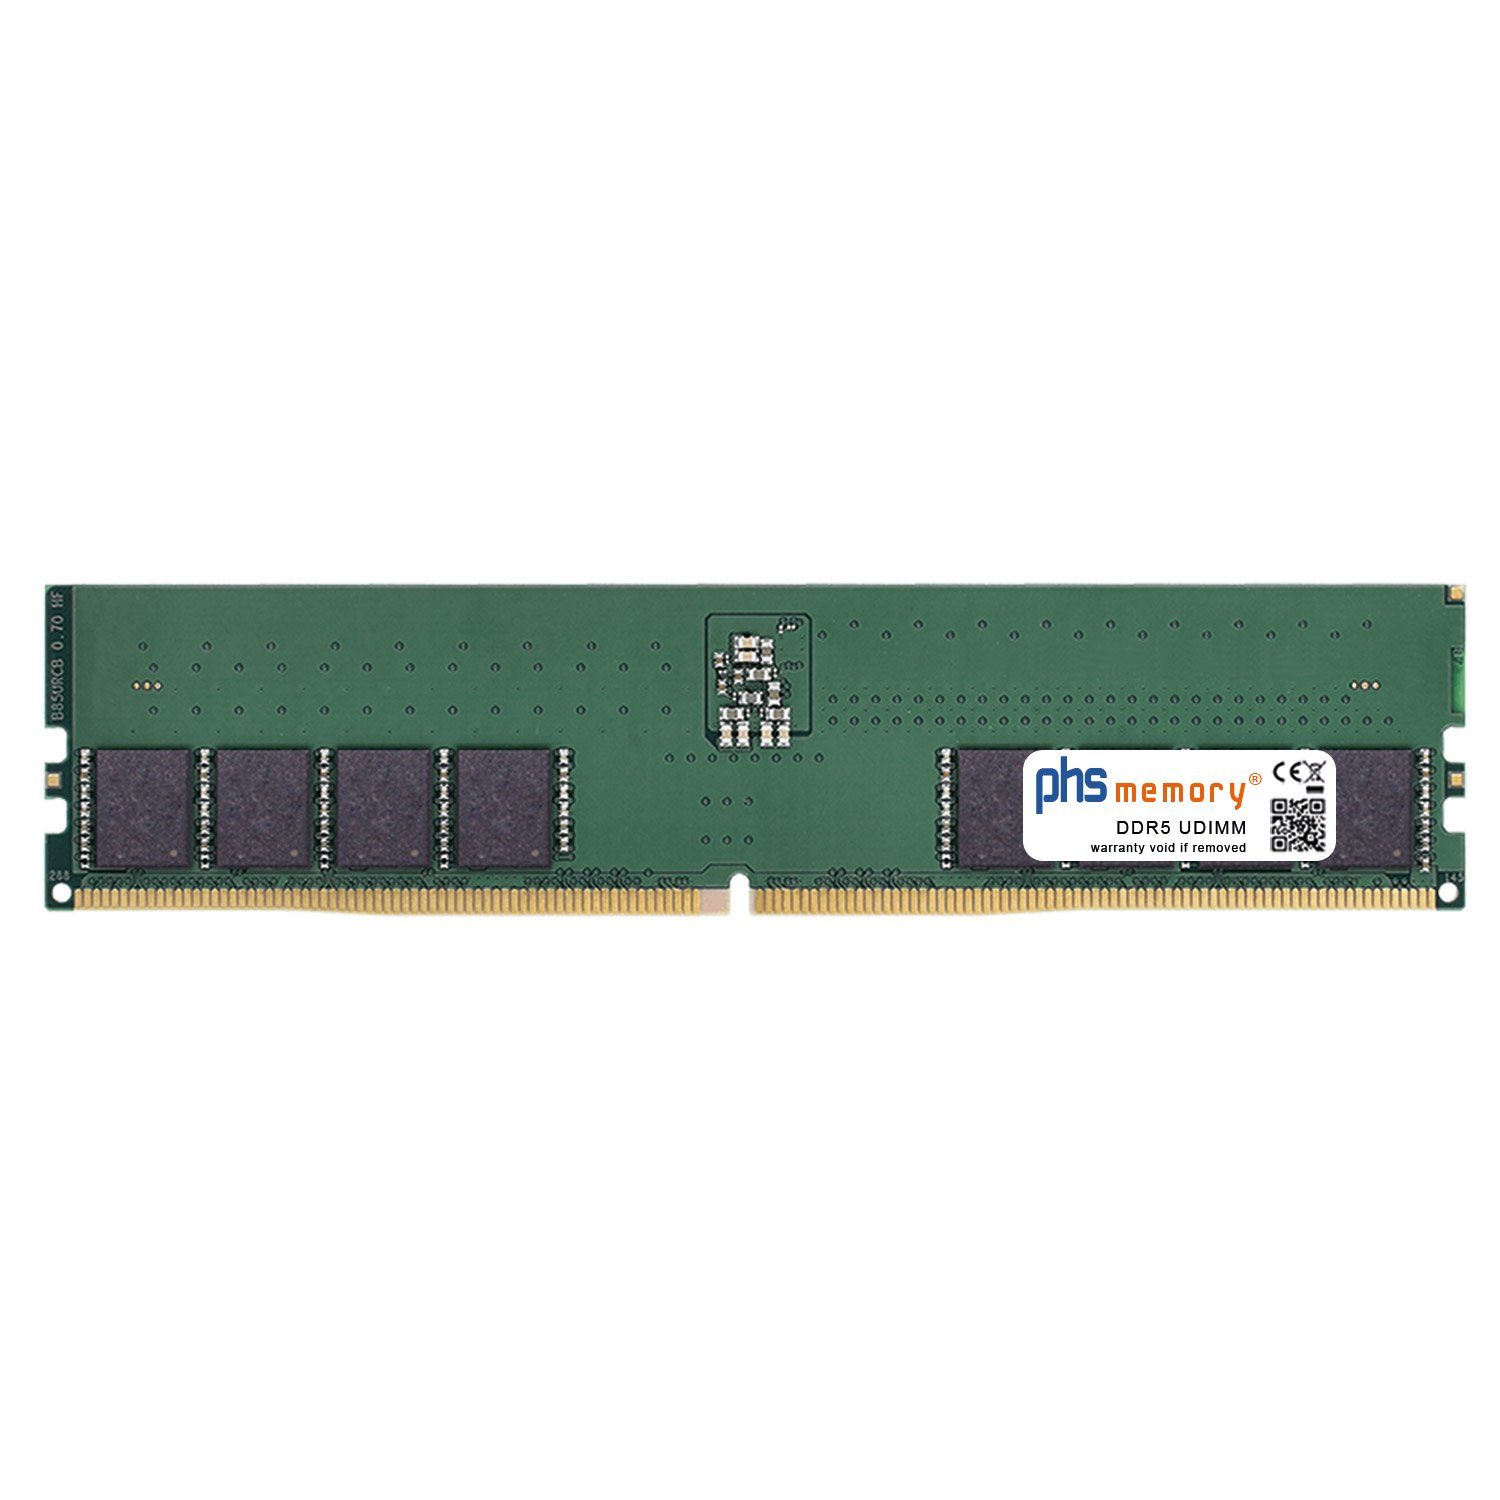 PHS-memory RAM für Captiva Highend Gaming R73-989 Arbeitsspeicher